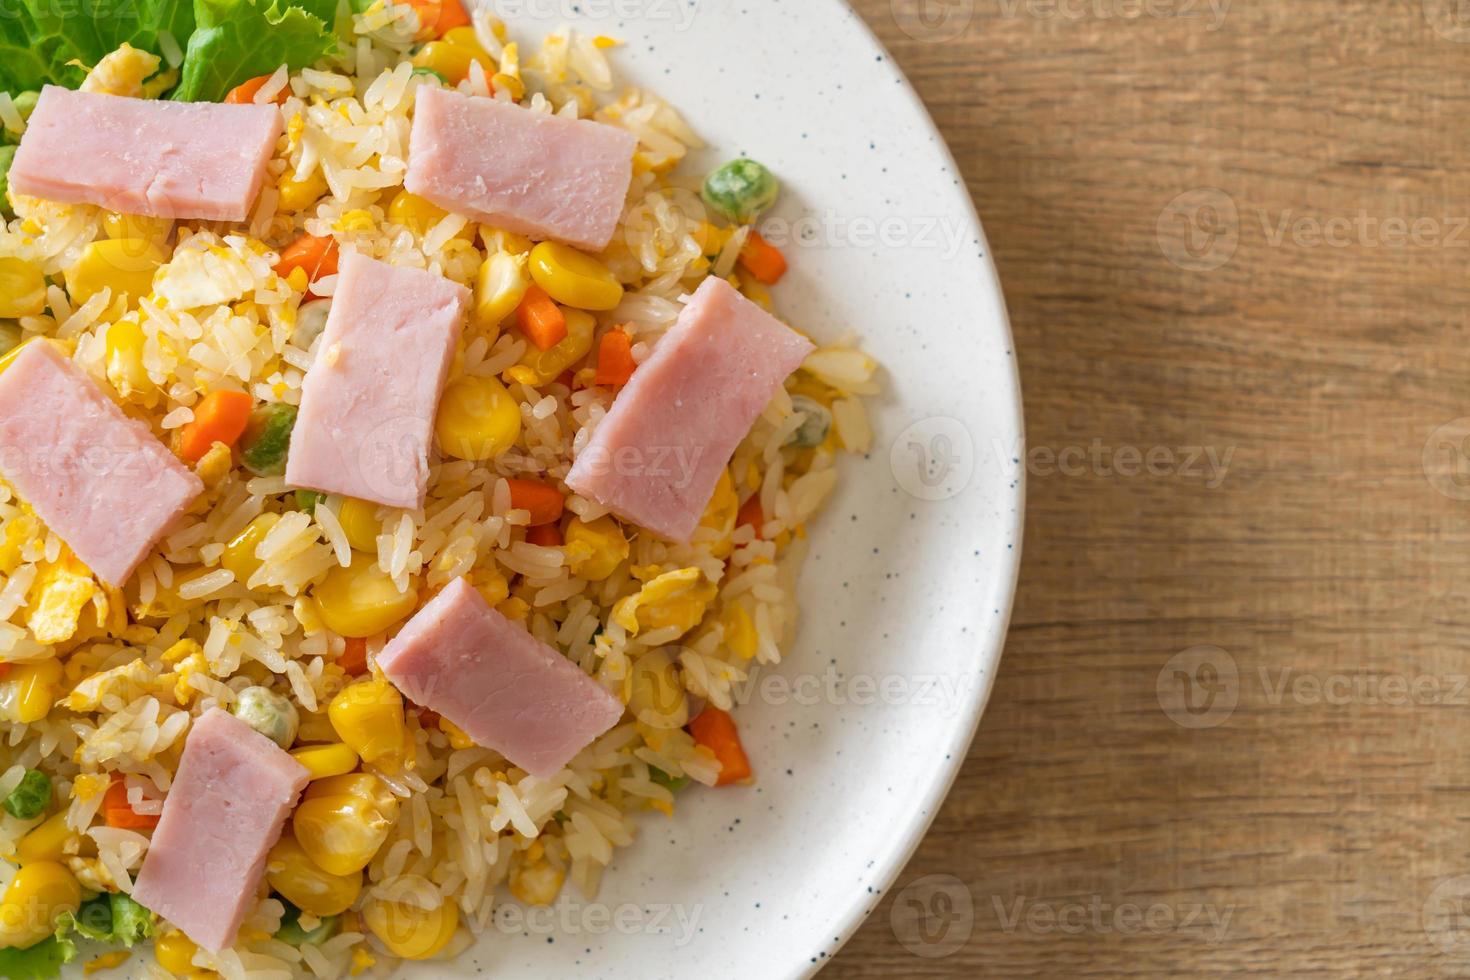 arroz frito com presunto e vegetais mistos foto